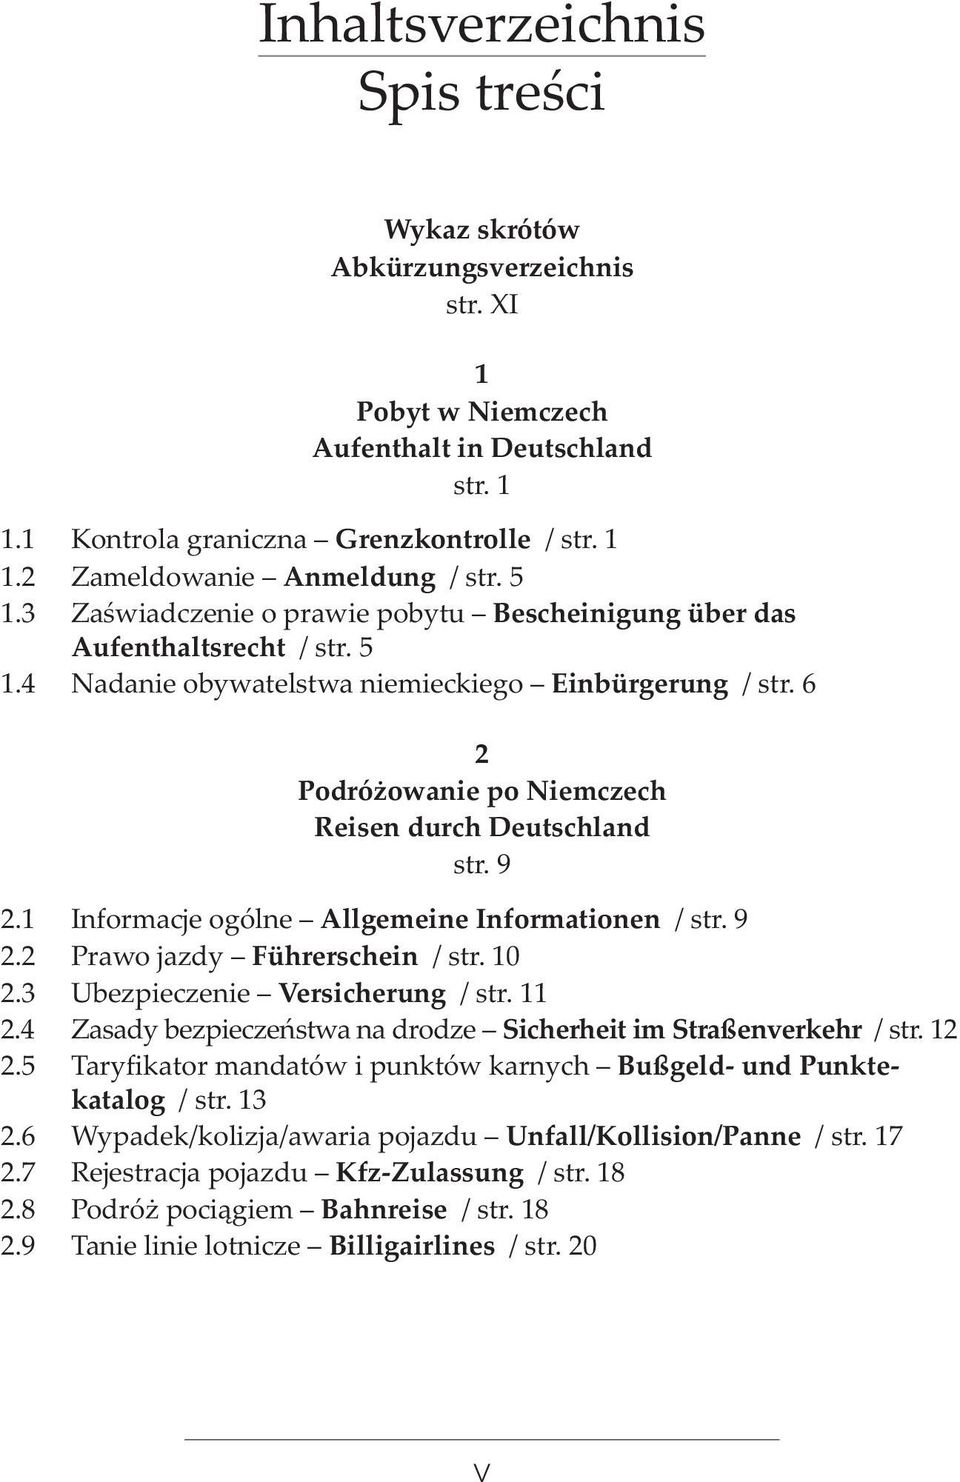 6 2 Podró owanie po Niemczech Reisen durch Deutschland str. 9 2.1 Informacje ogólne Allgemeine Informationen / str. 9 2.2 Prawo jazdy Führerschein / str. 10 2.3 Ubezpieczenie Versicherung / str. 11 2.